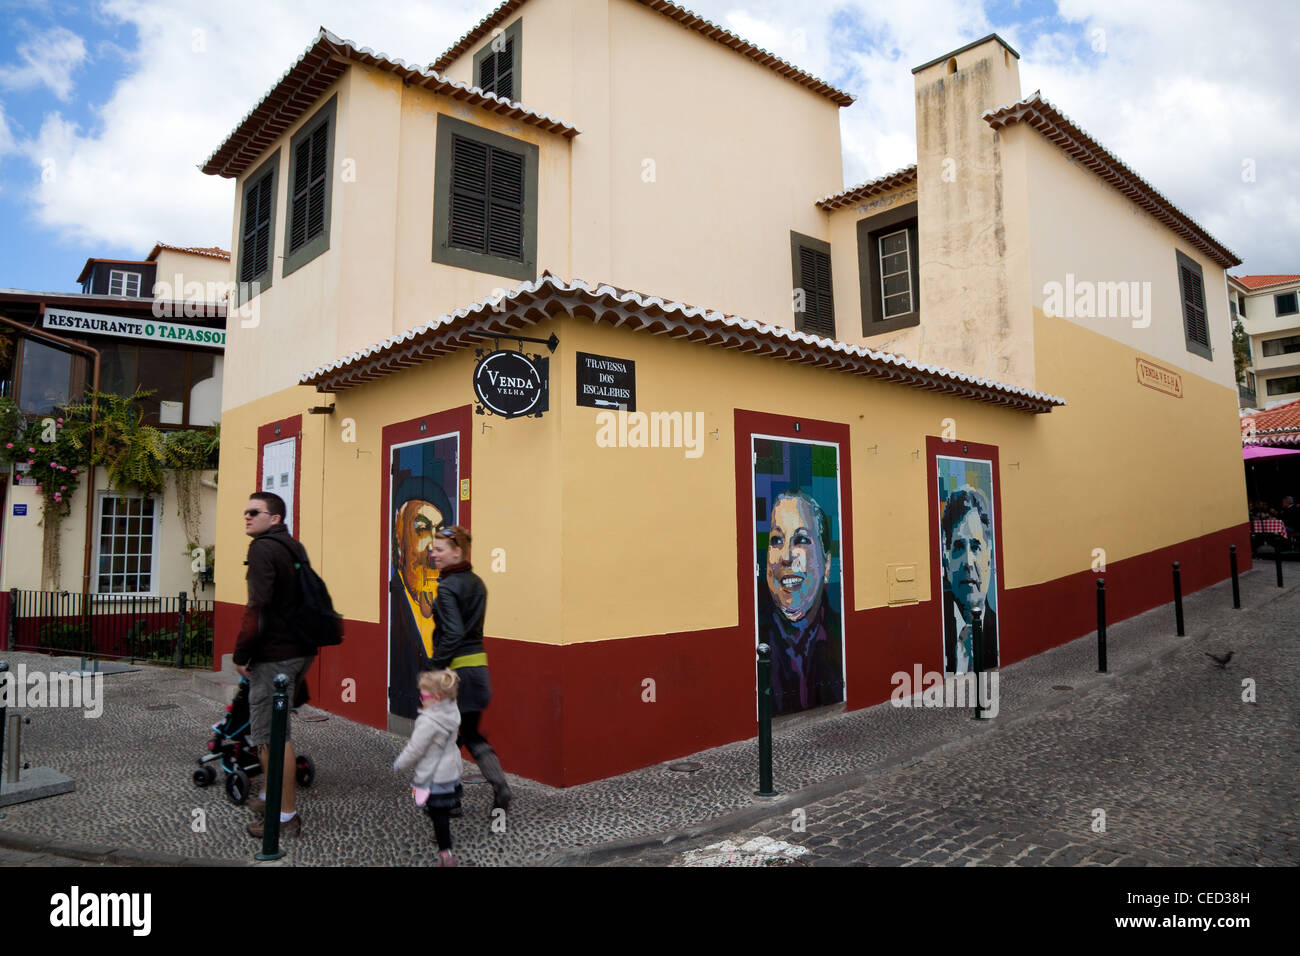 Pinturas y retratos en la arquitectura mediterránea Zona Historica do Funchal Portas com Art. Puertas decoradas en Funchal, Madeira, Portugal. Foto de stock